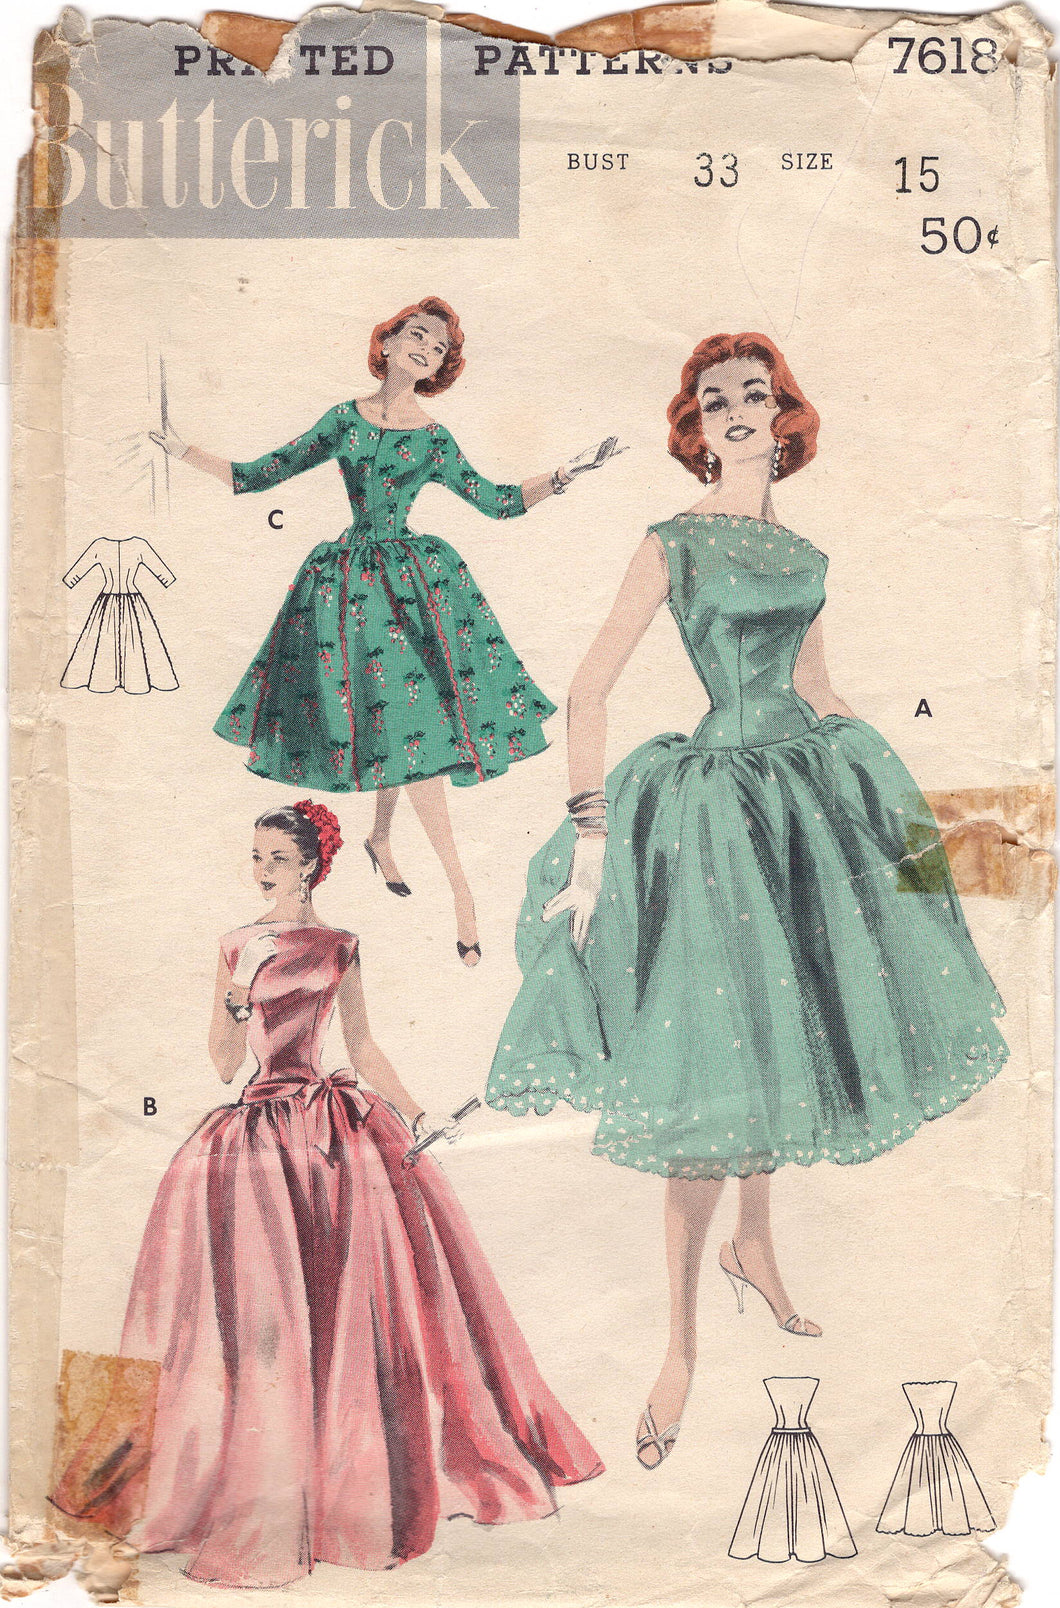 1950's Butterick Drop Waist Ball Gown or Day Dress Pattern - Bust 33